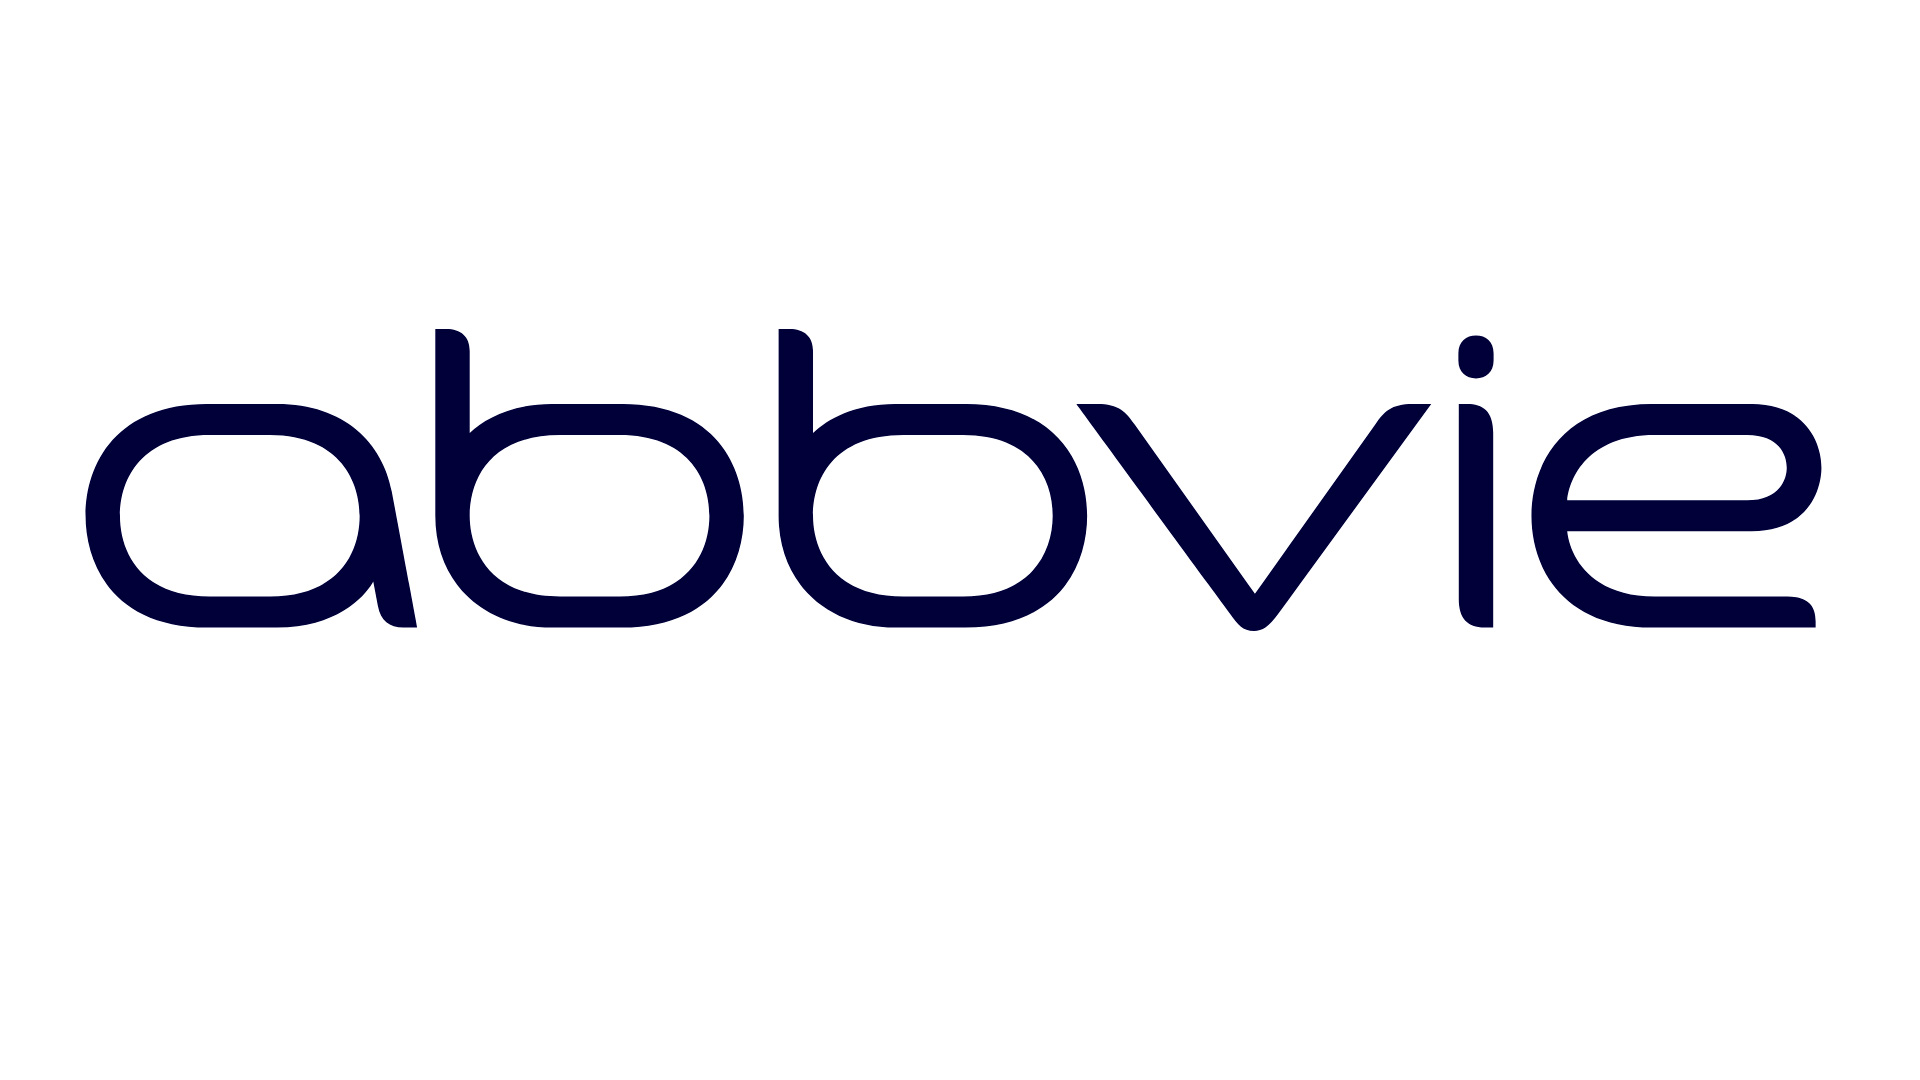 mejores-logos-farmaceutico-abbvie-01